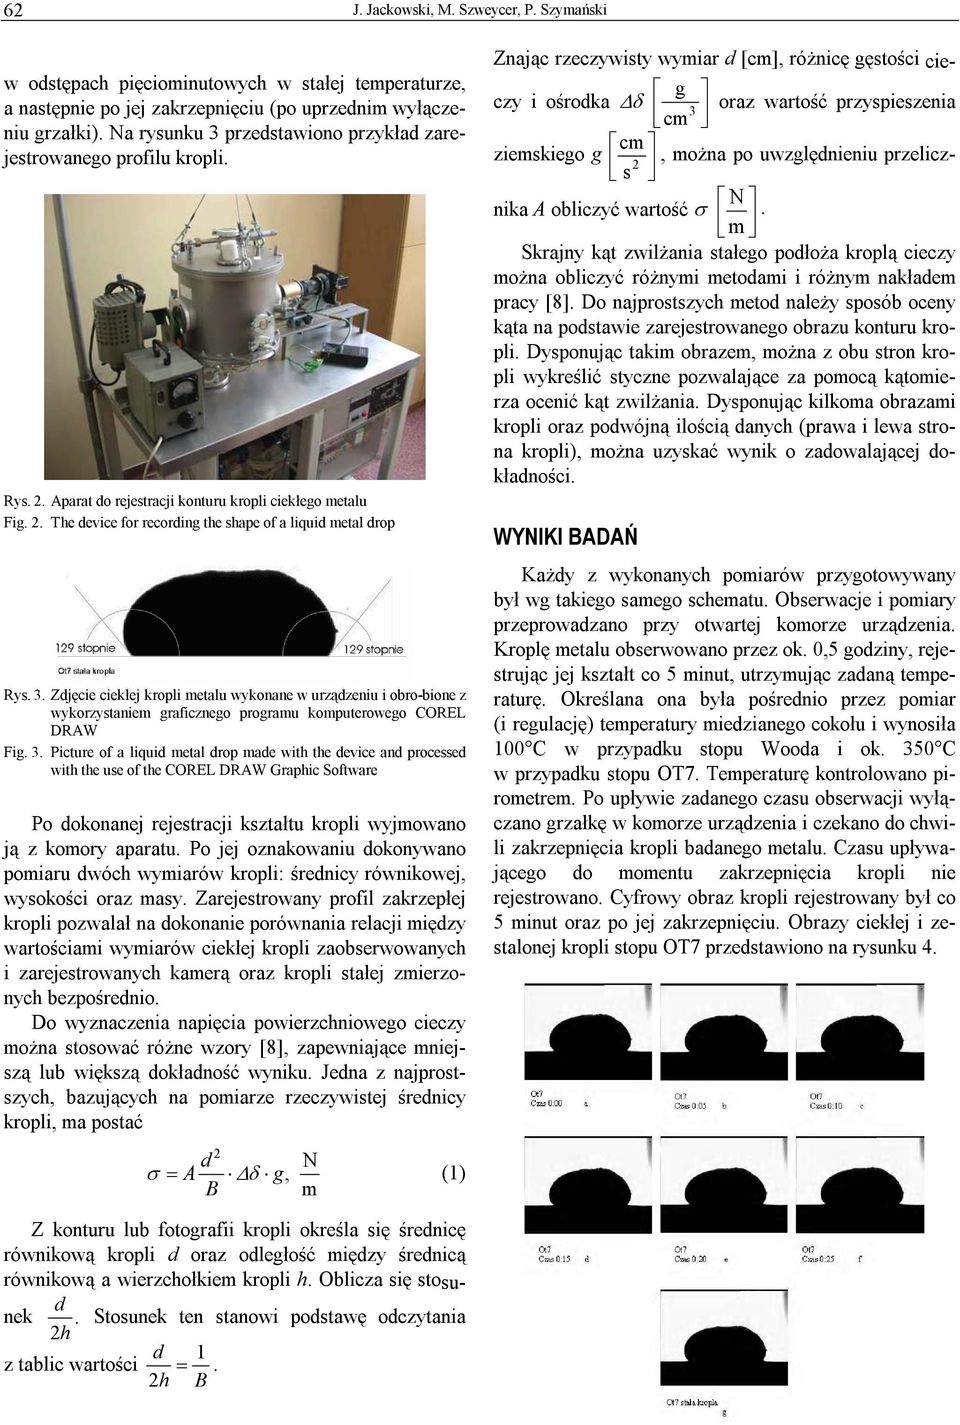 3. Zdjęcie ciekłej kropli metalu wykonane w urządzeniu i obro-bione z wykorzystaniem graficznego programu komputerowego COREL DRAW Fig. 3.